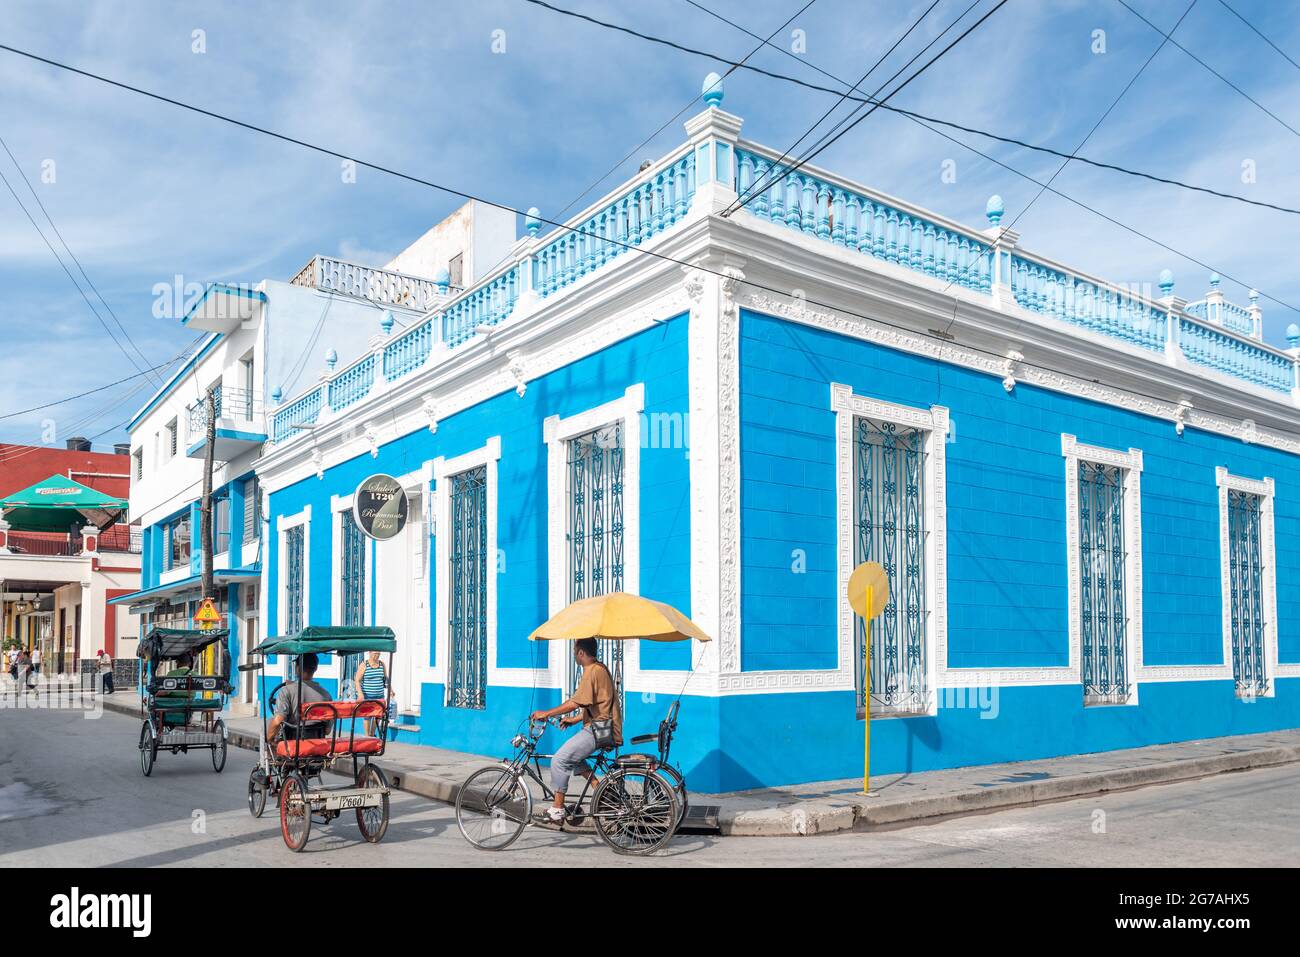 City life by the bar restaurant Salon 1720 in Holguin, Cuba, 2016 Stock Photo